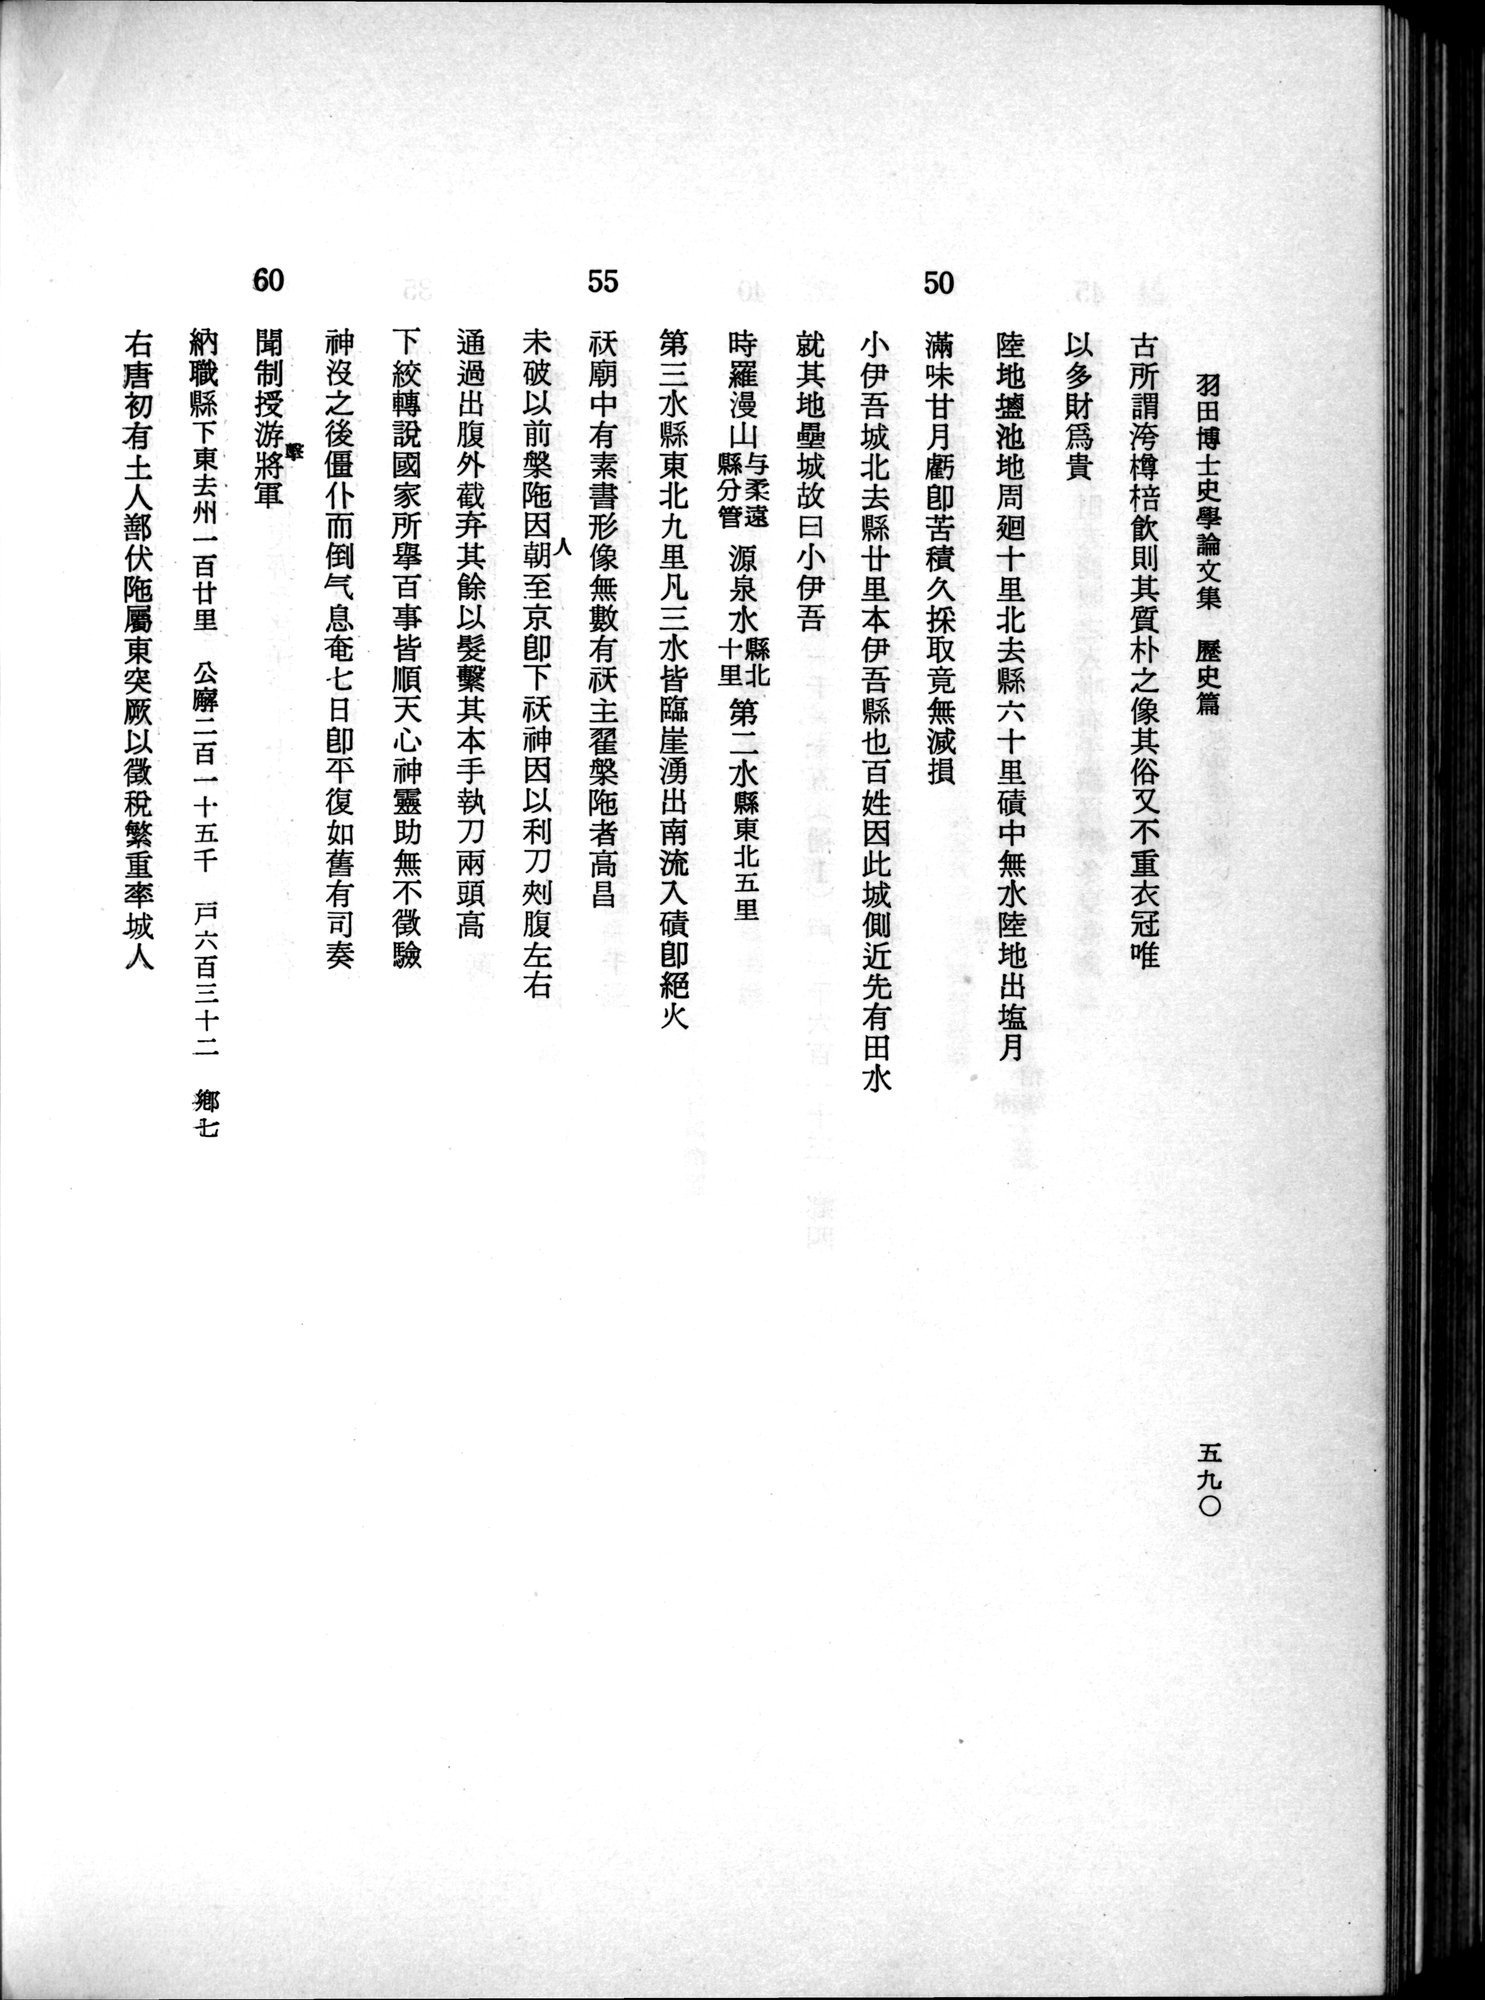 羽田博士史学論文集 : vol.1 / Page 628 (Grayscale High Resolution Image)